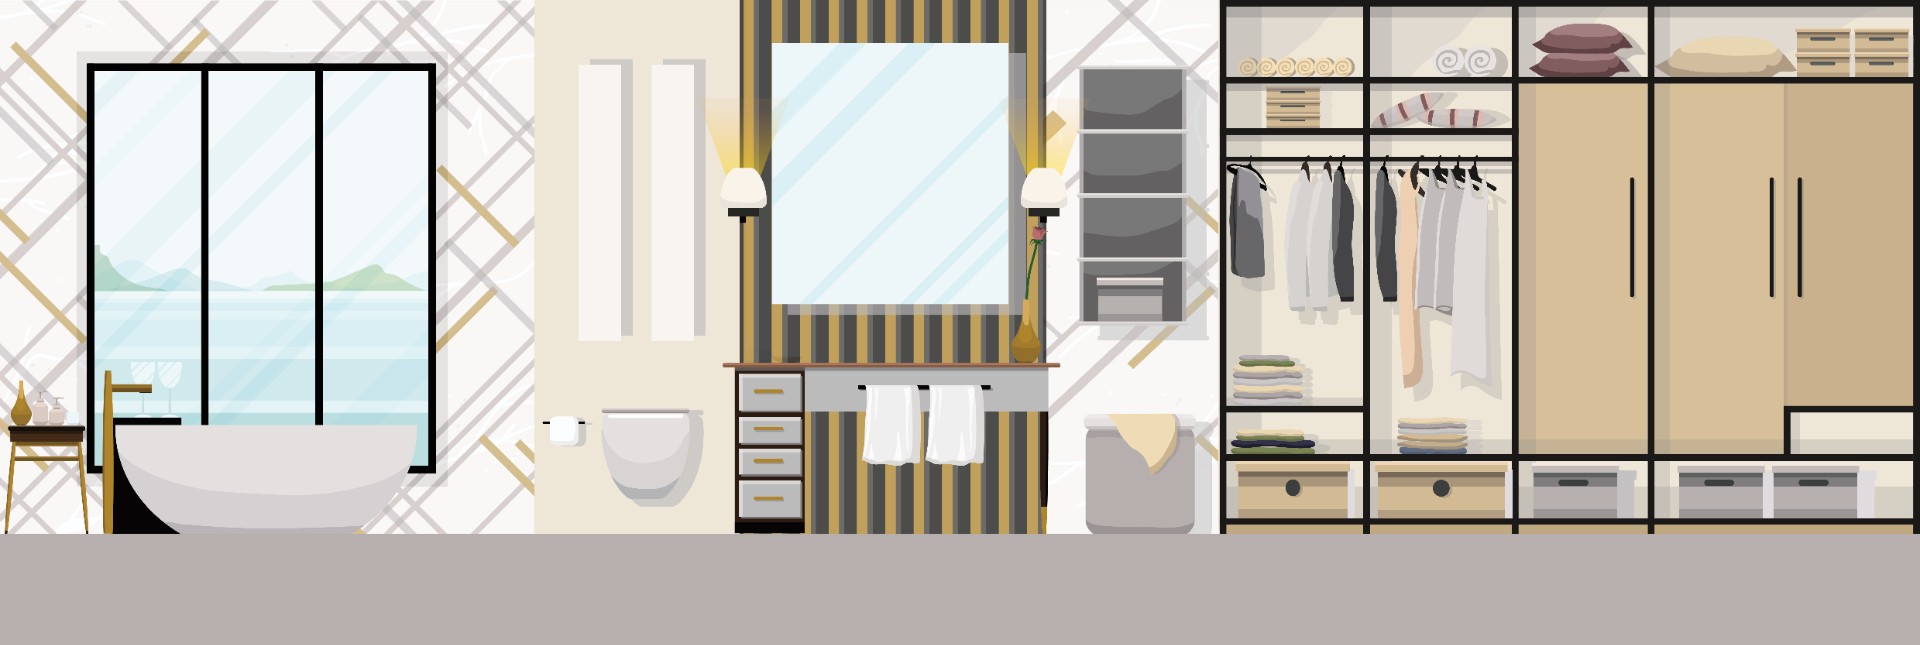 现代浴室家具平面设计插图0